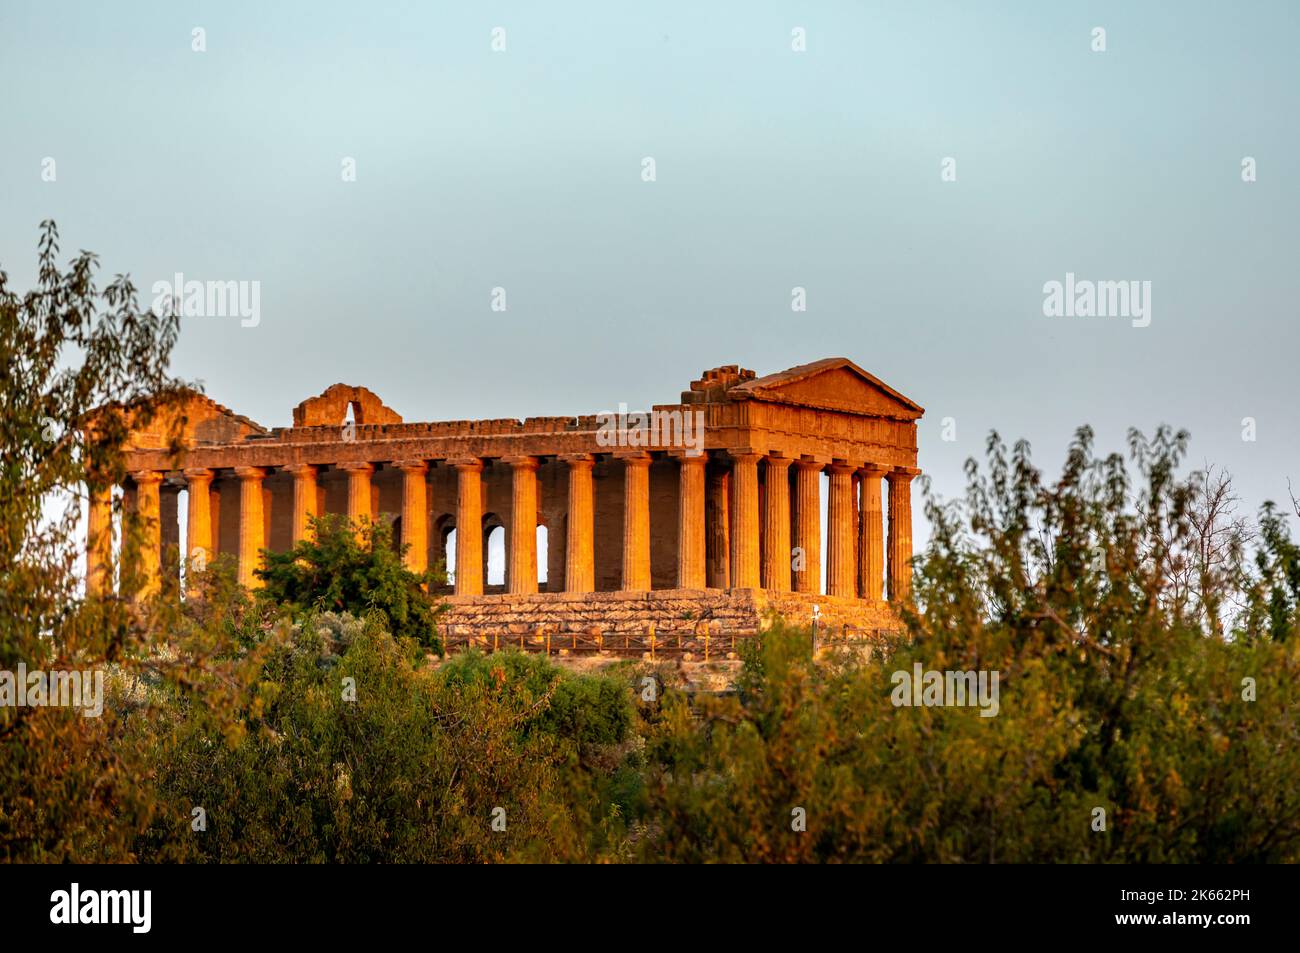 Agrigento, Sicile, Italie - 12 juillet 2020 : ruines grecques du temple Concordia dans la vallée des temples près d'Agrigento en Sicile Banque D'Images